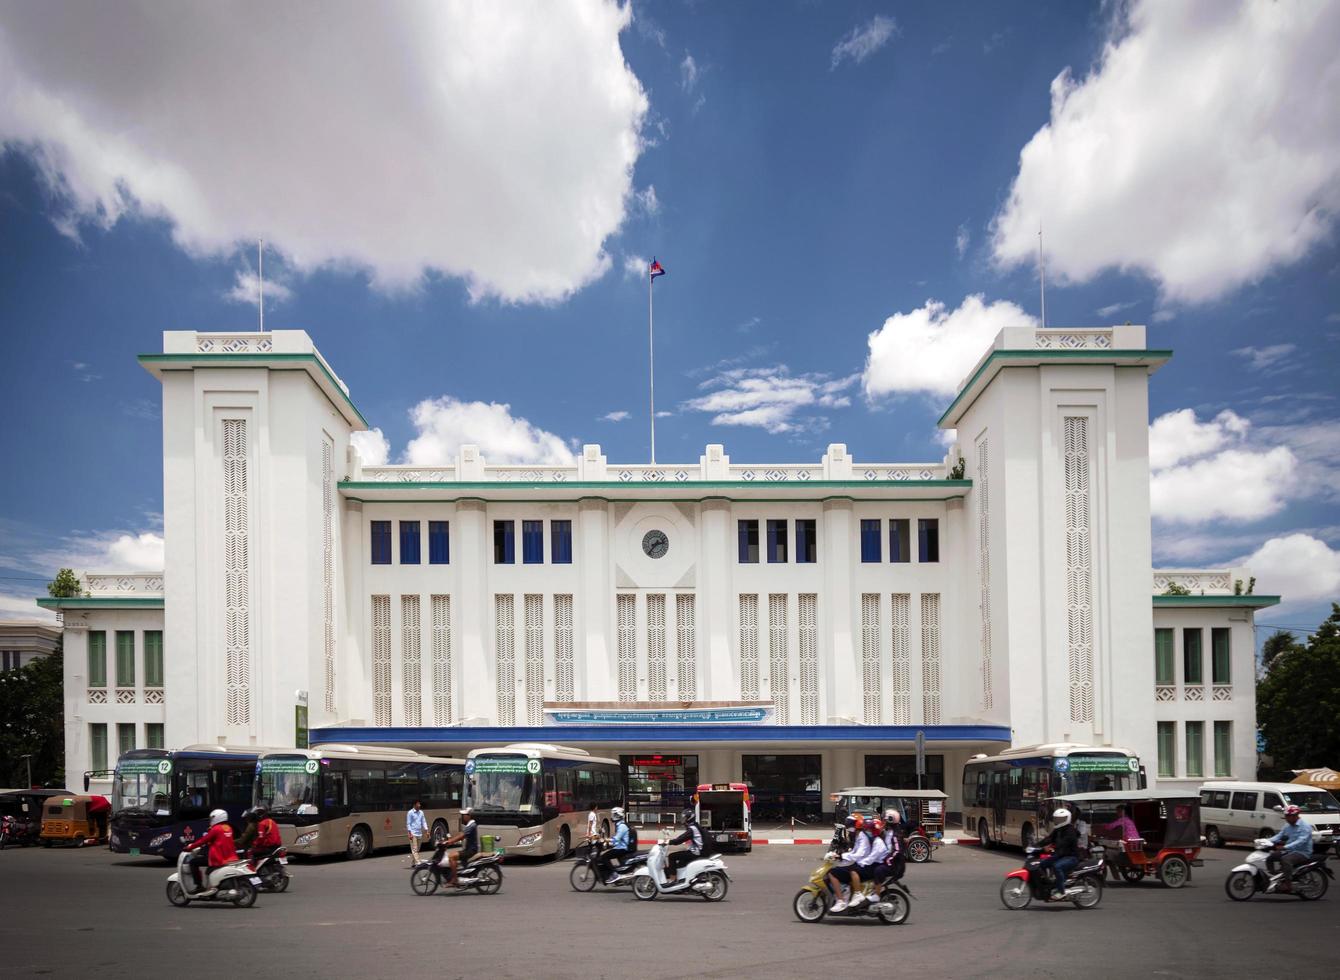 phnom penh, camboja, 2021 - marco da estação ferroviária foto